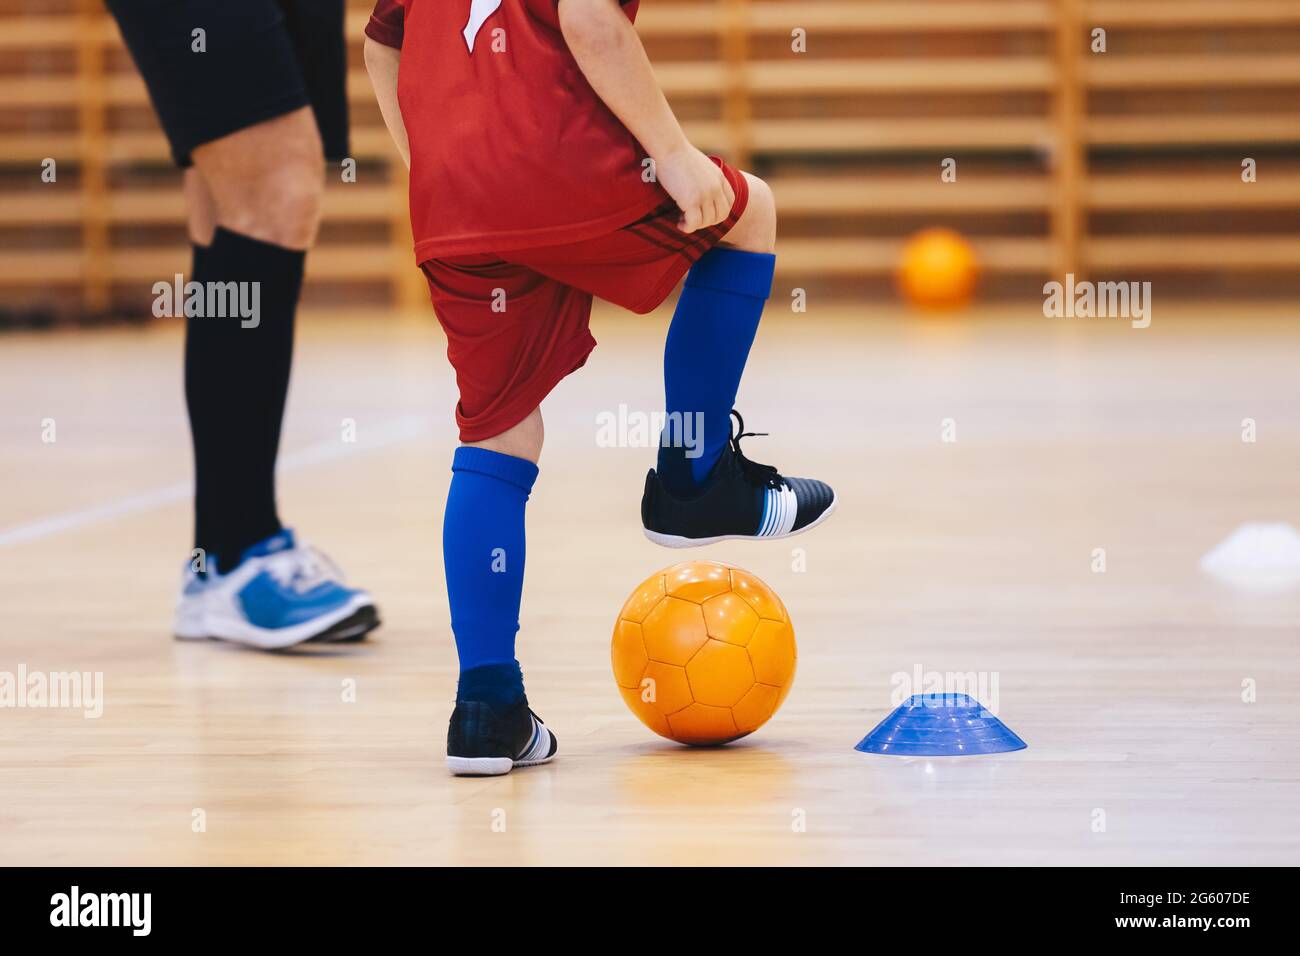 Futbol sala niños fotografías e imágenes de alta resolución - Alamy